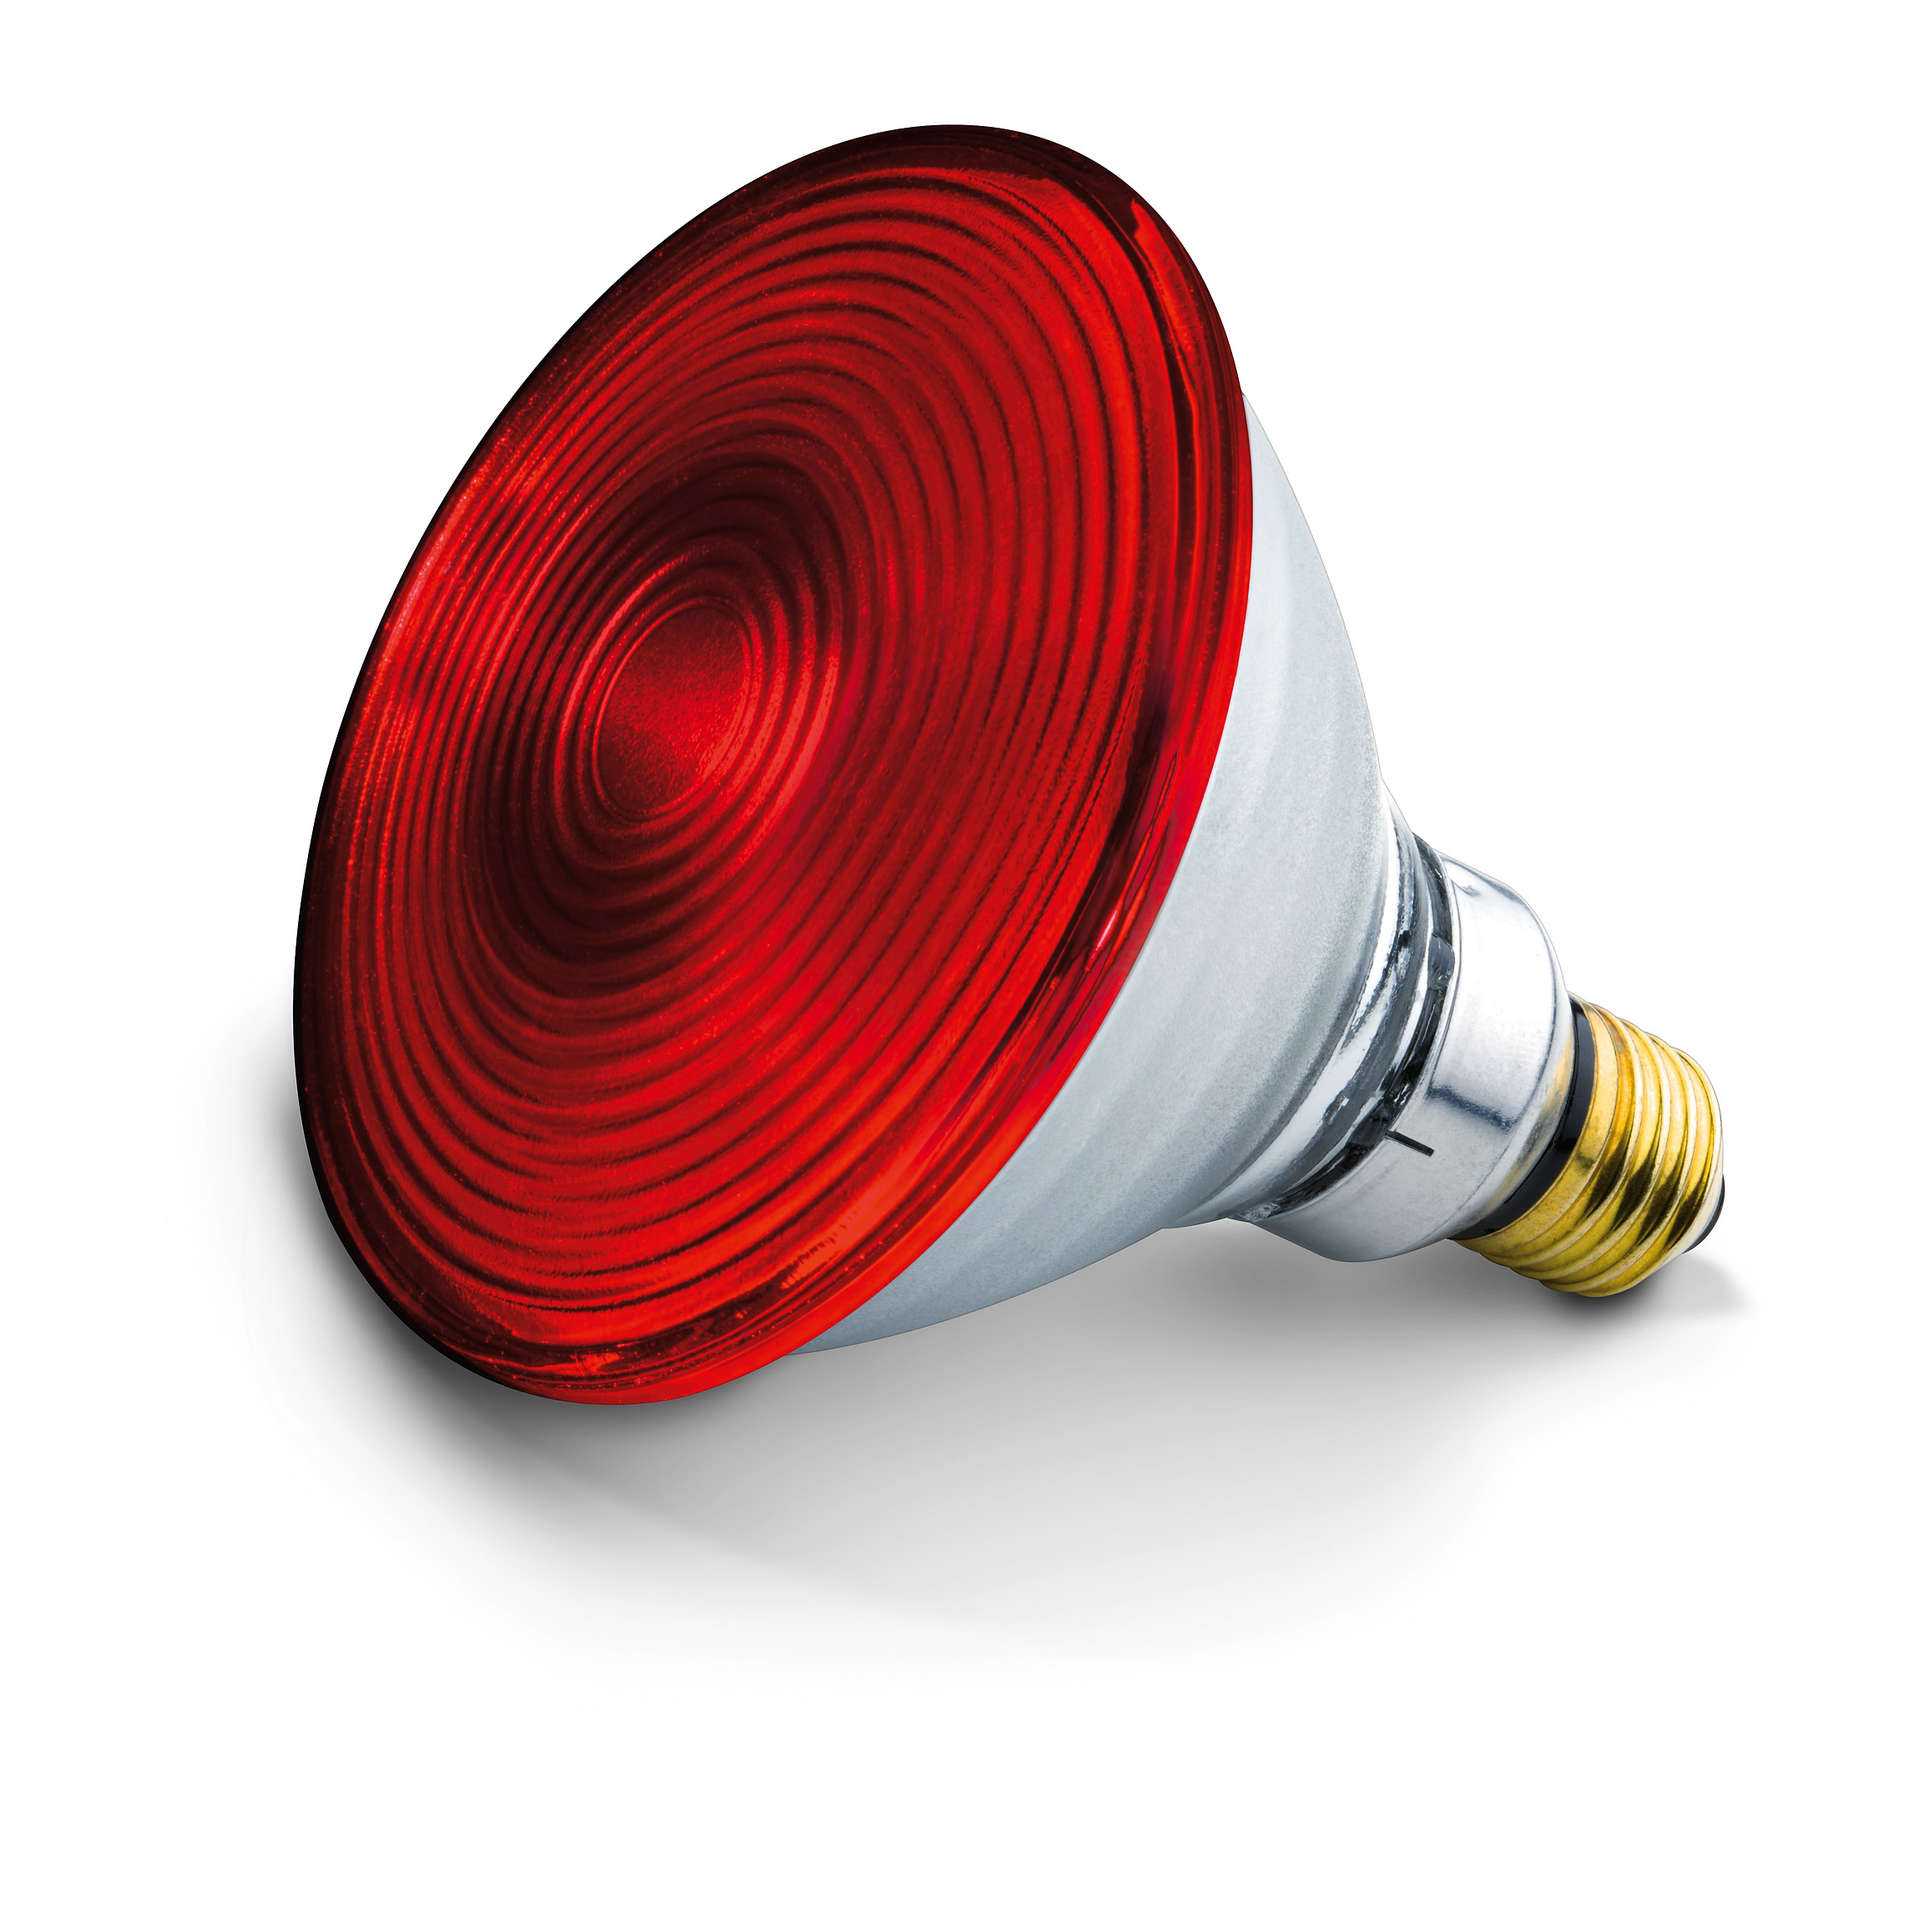 Инфракрасная лампочка: характеристики, назначение и практическое применение